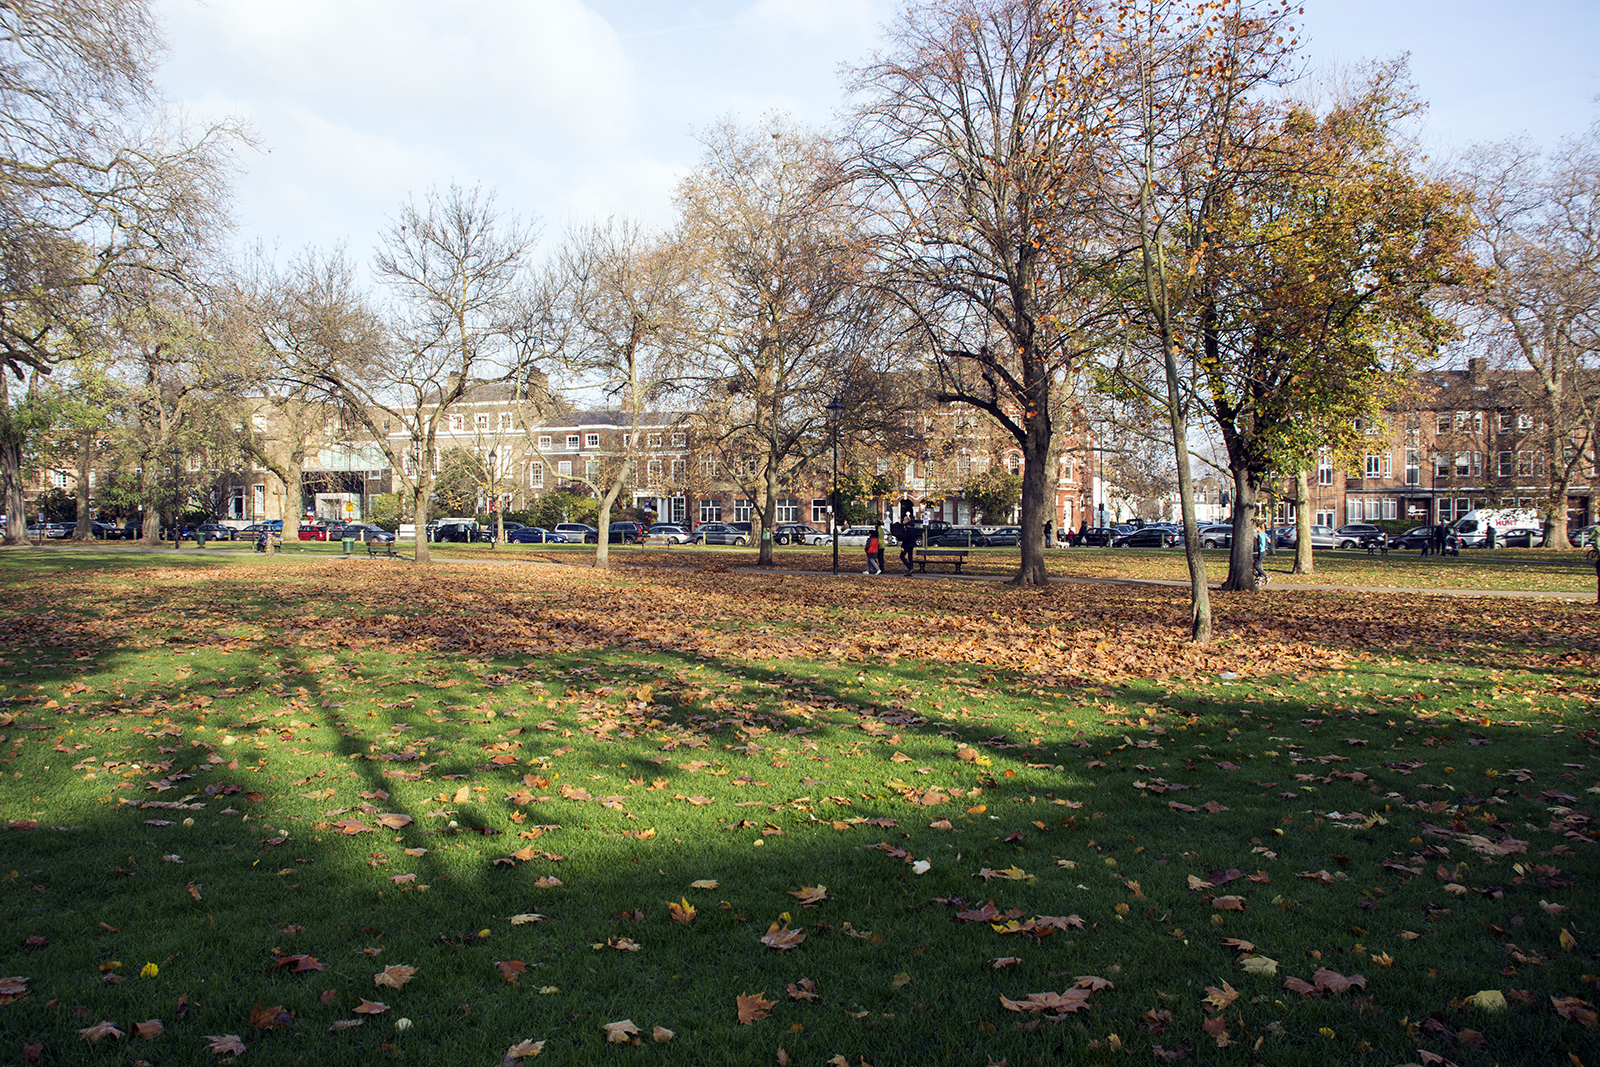 2016-11-26-Fulham_Autumn_Landscape_Small-Park-Parsons-Green-Landscape